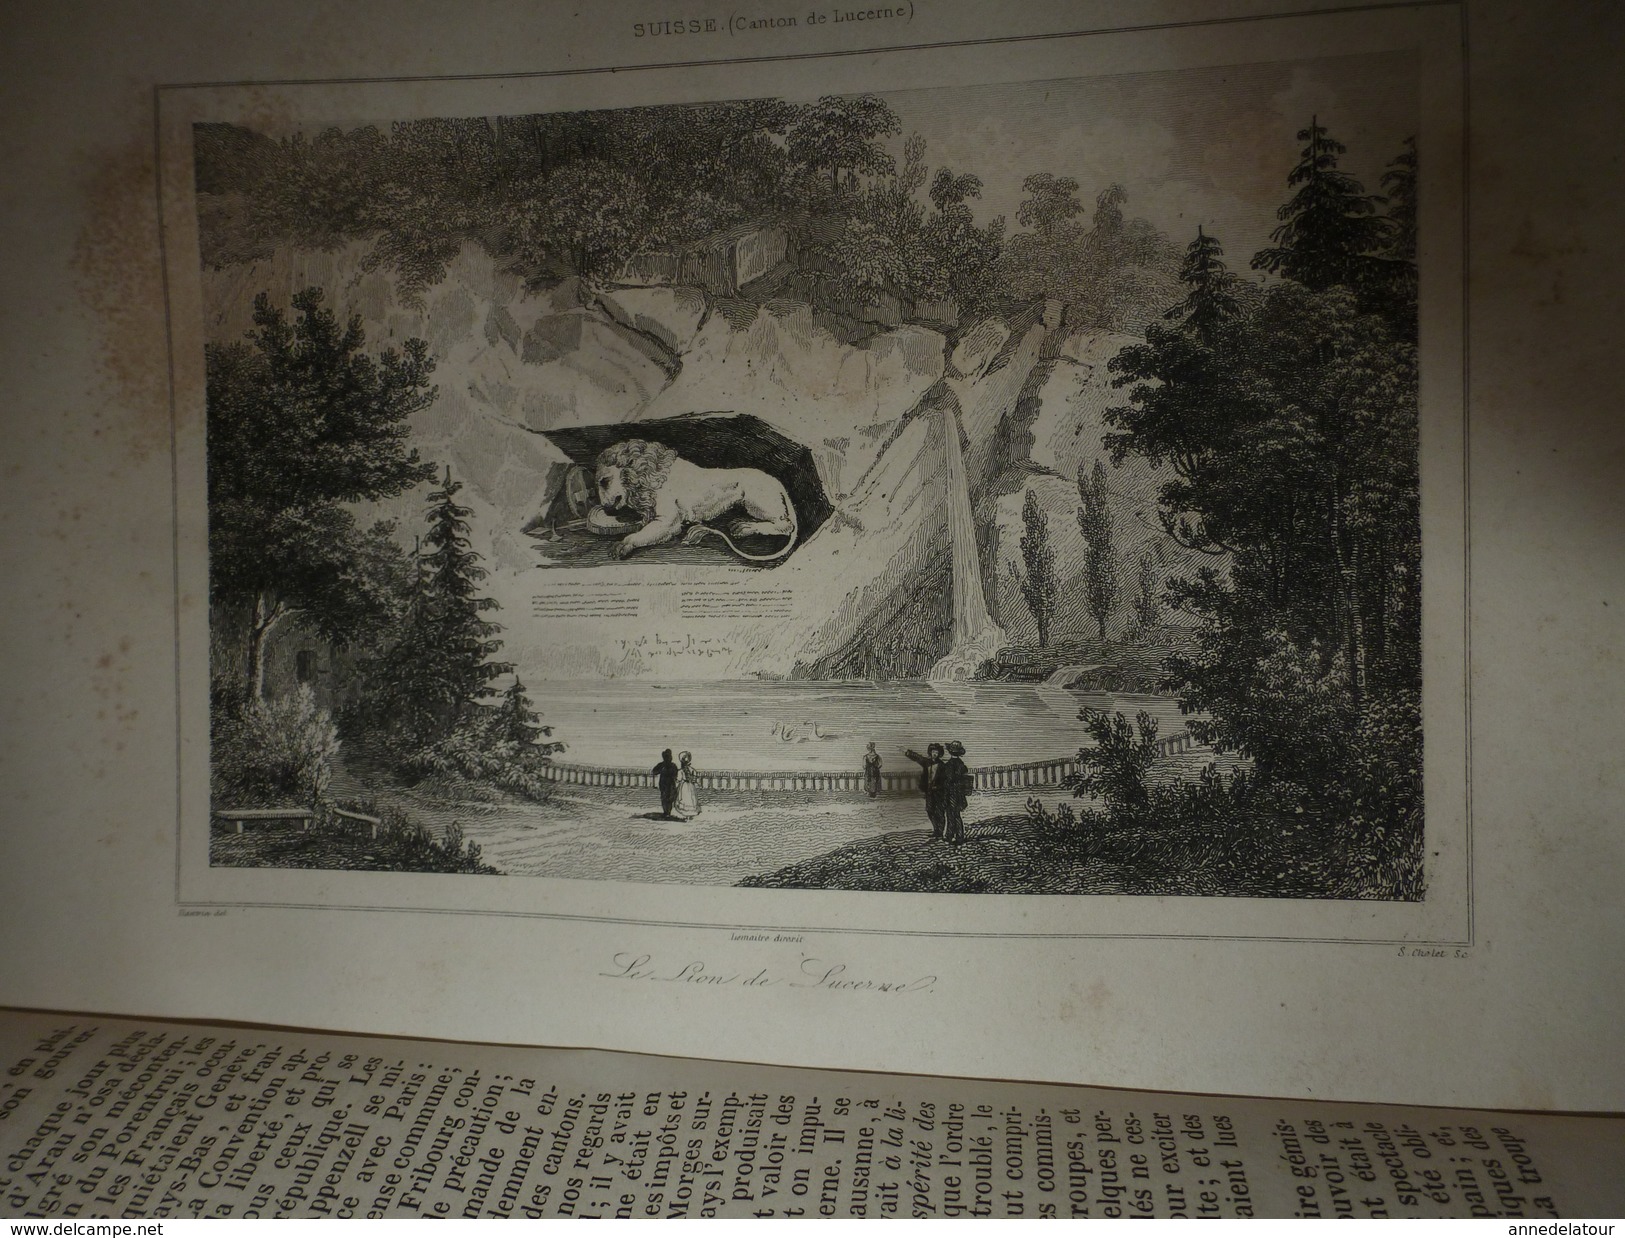 1838  Tout sur les ORIGINES de la SUISSE ,moeurs ,coutumes,etc : par M. de Golbéry, avec nombreuses gravures hors textes